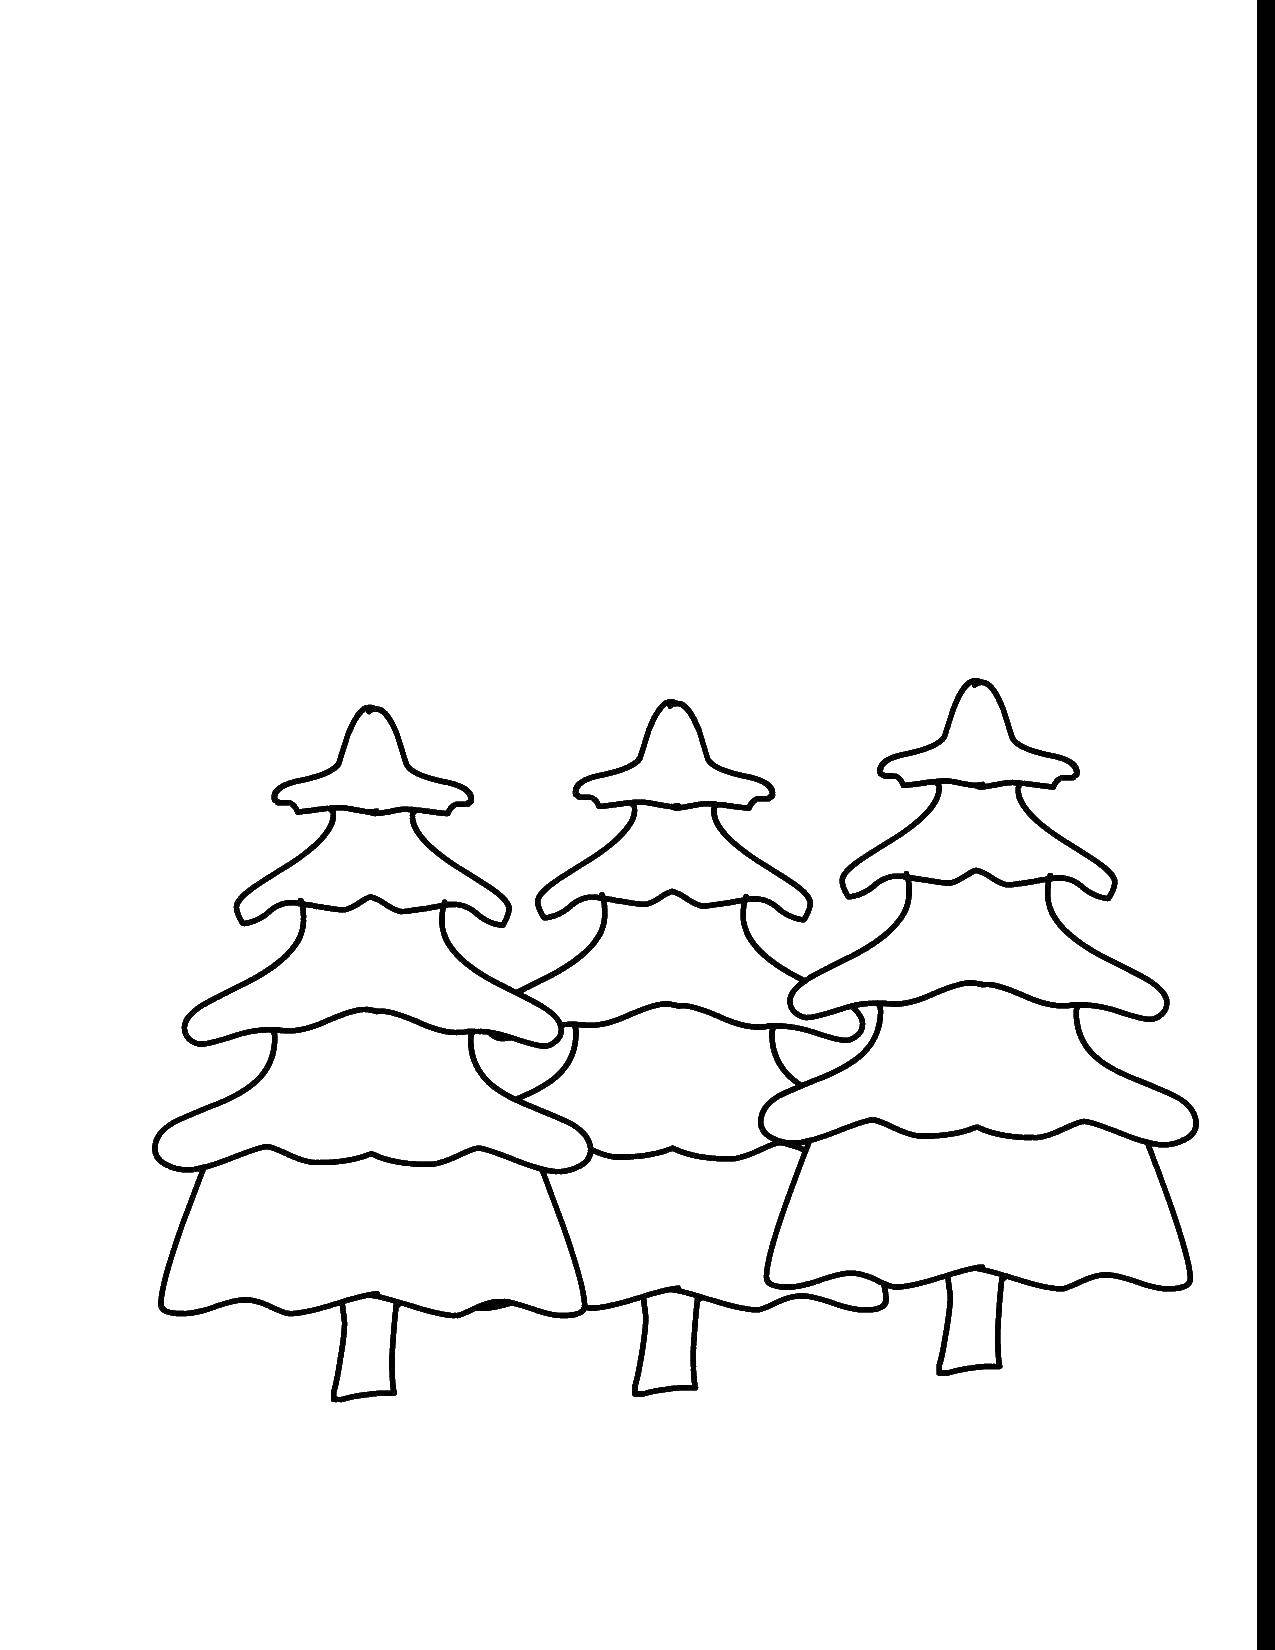 Название: Раскраска Три елки. Категория: рождество. Теги: дерево, елка.